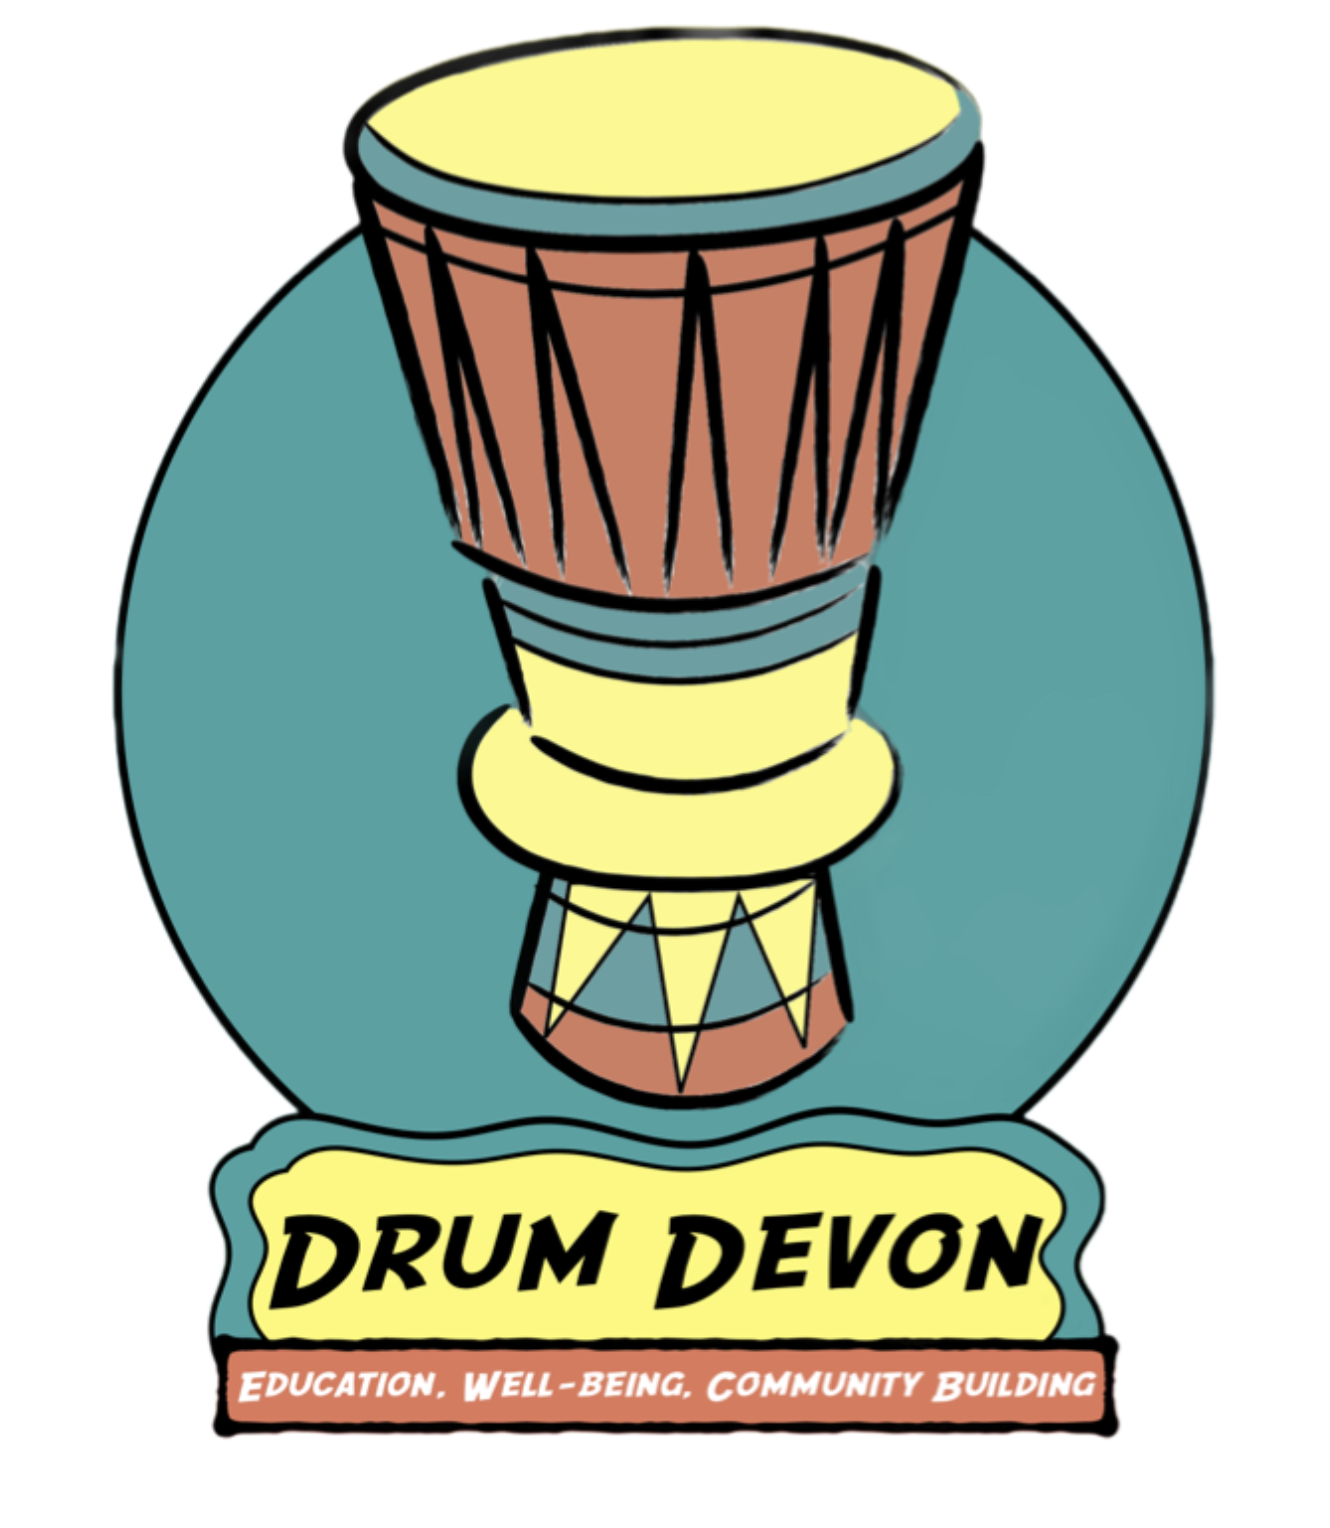 Drumming Workshop with Drum Devon